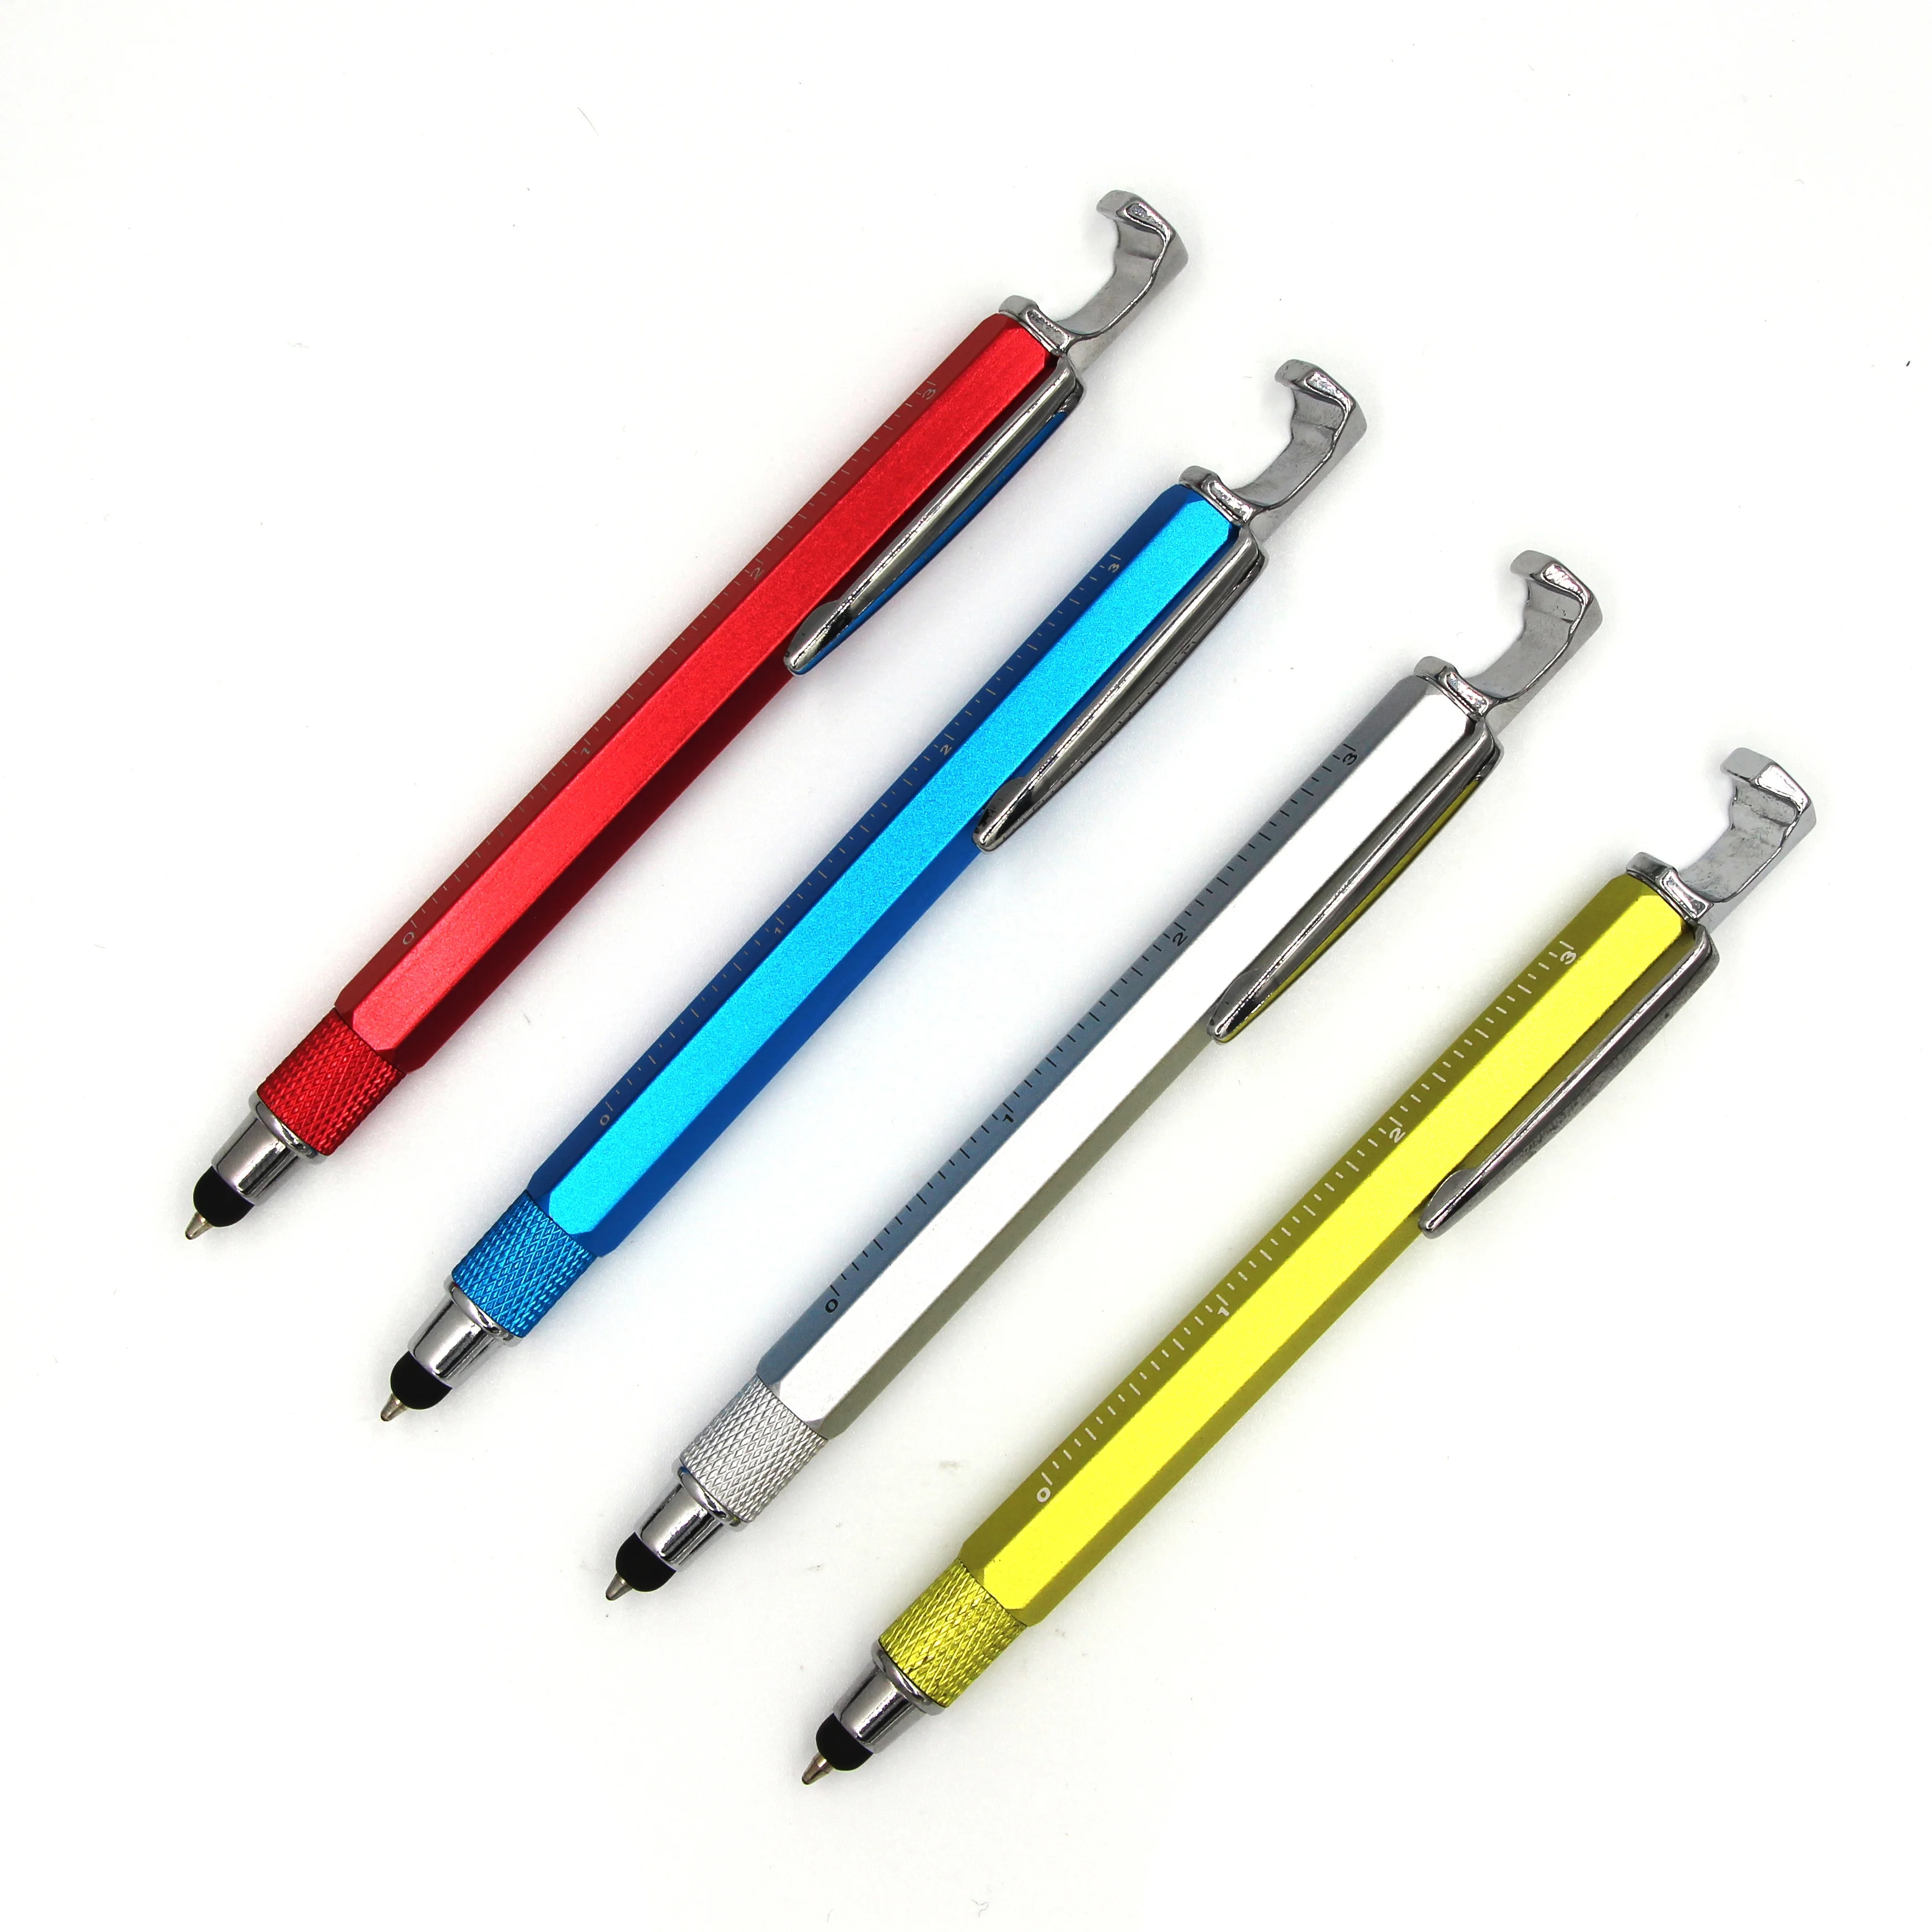 Multifunctional mobile phone holder ballpoint pen screwdriver tool pen spirit level caliper pen